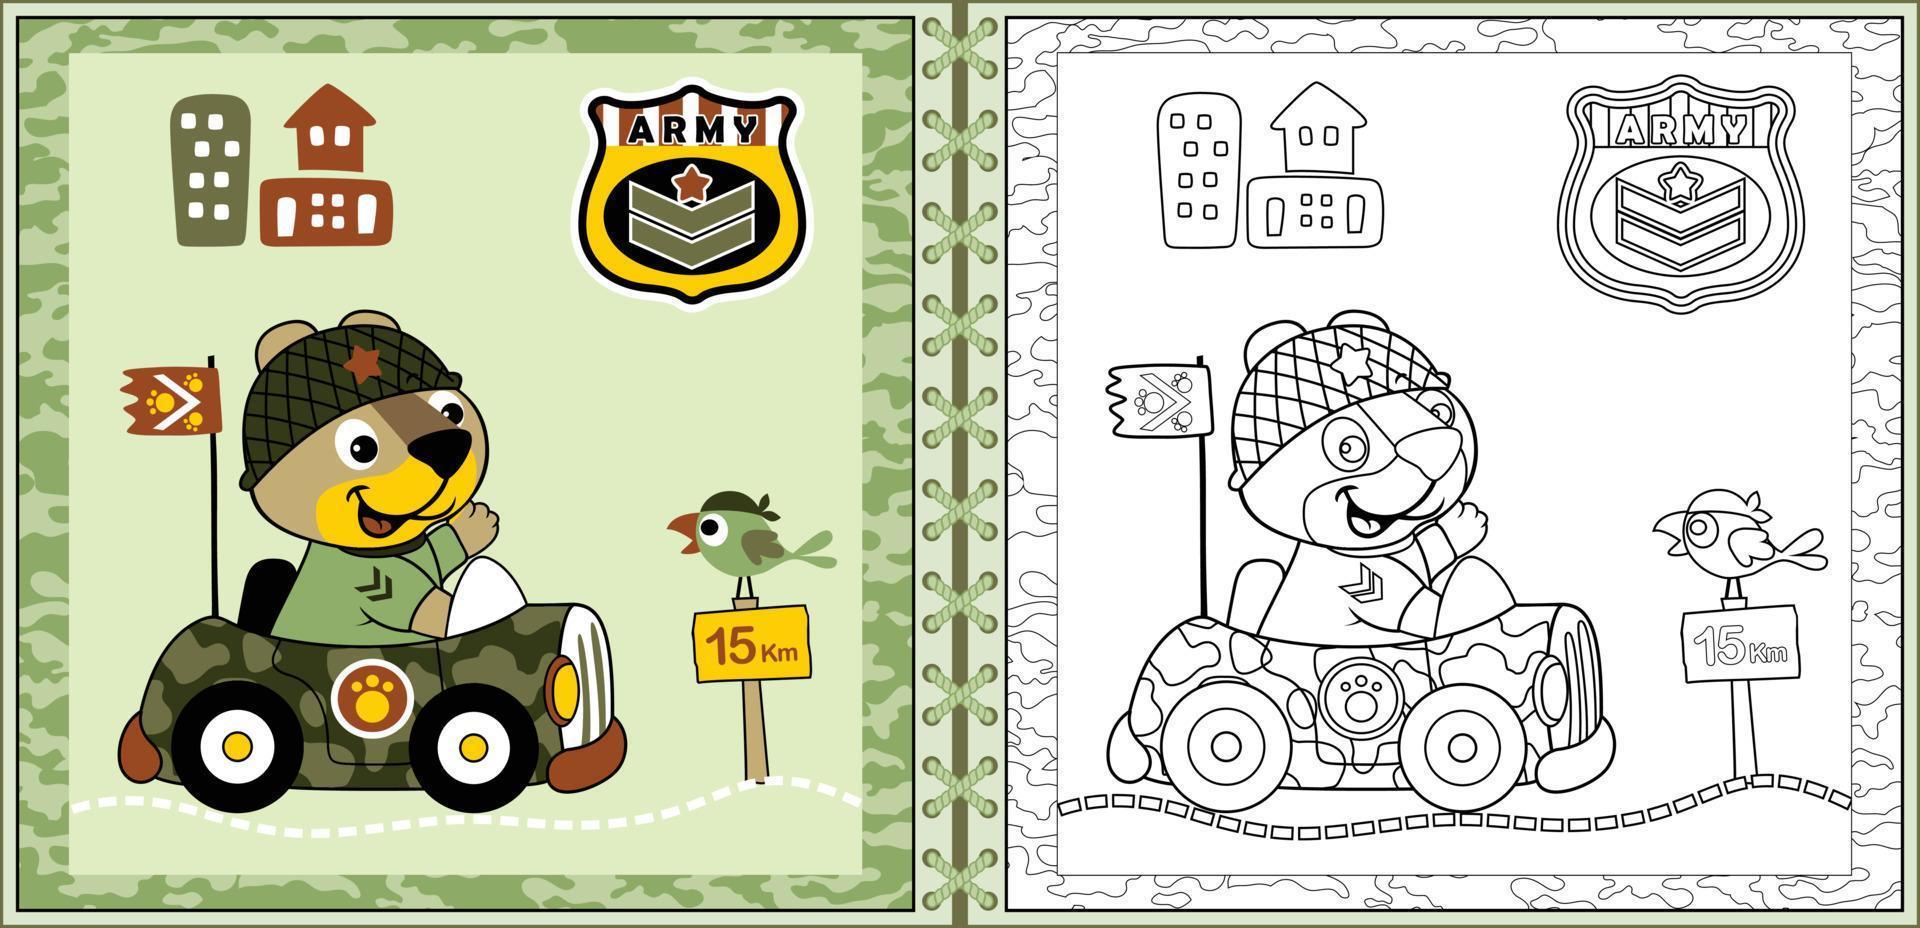 dessin animé de chat mignon conduisant une voiture militaire sur un cadre de camouflage avec oiseau, éléments militaires. livre ou page de coloriage vecteur